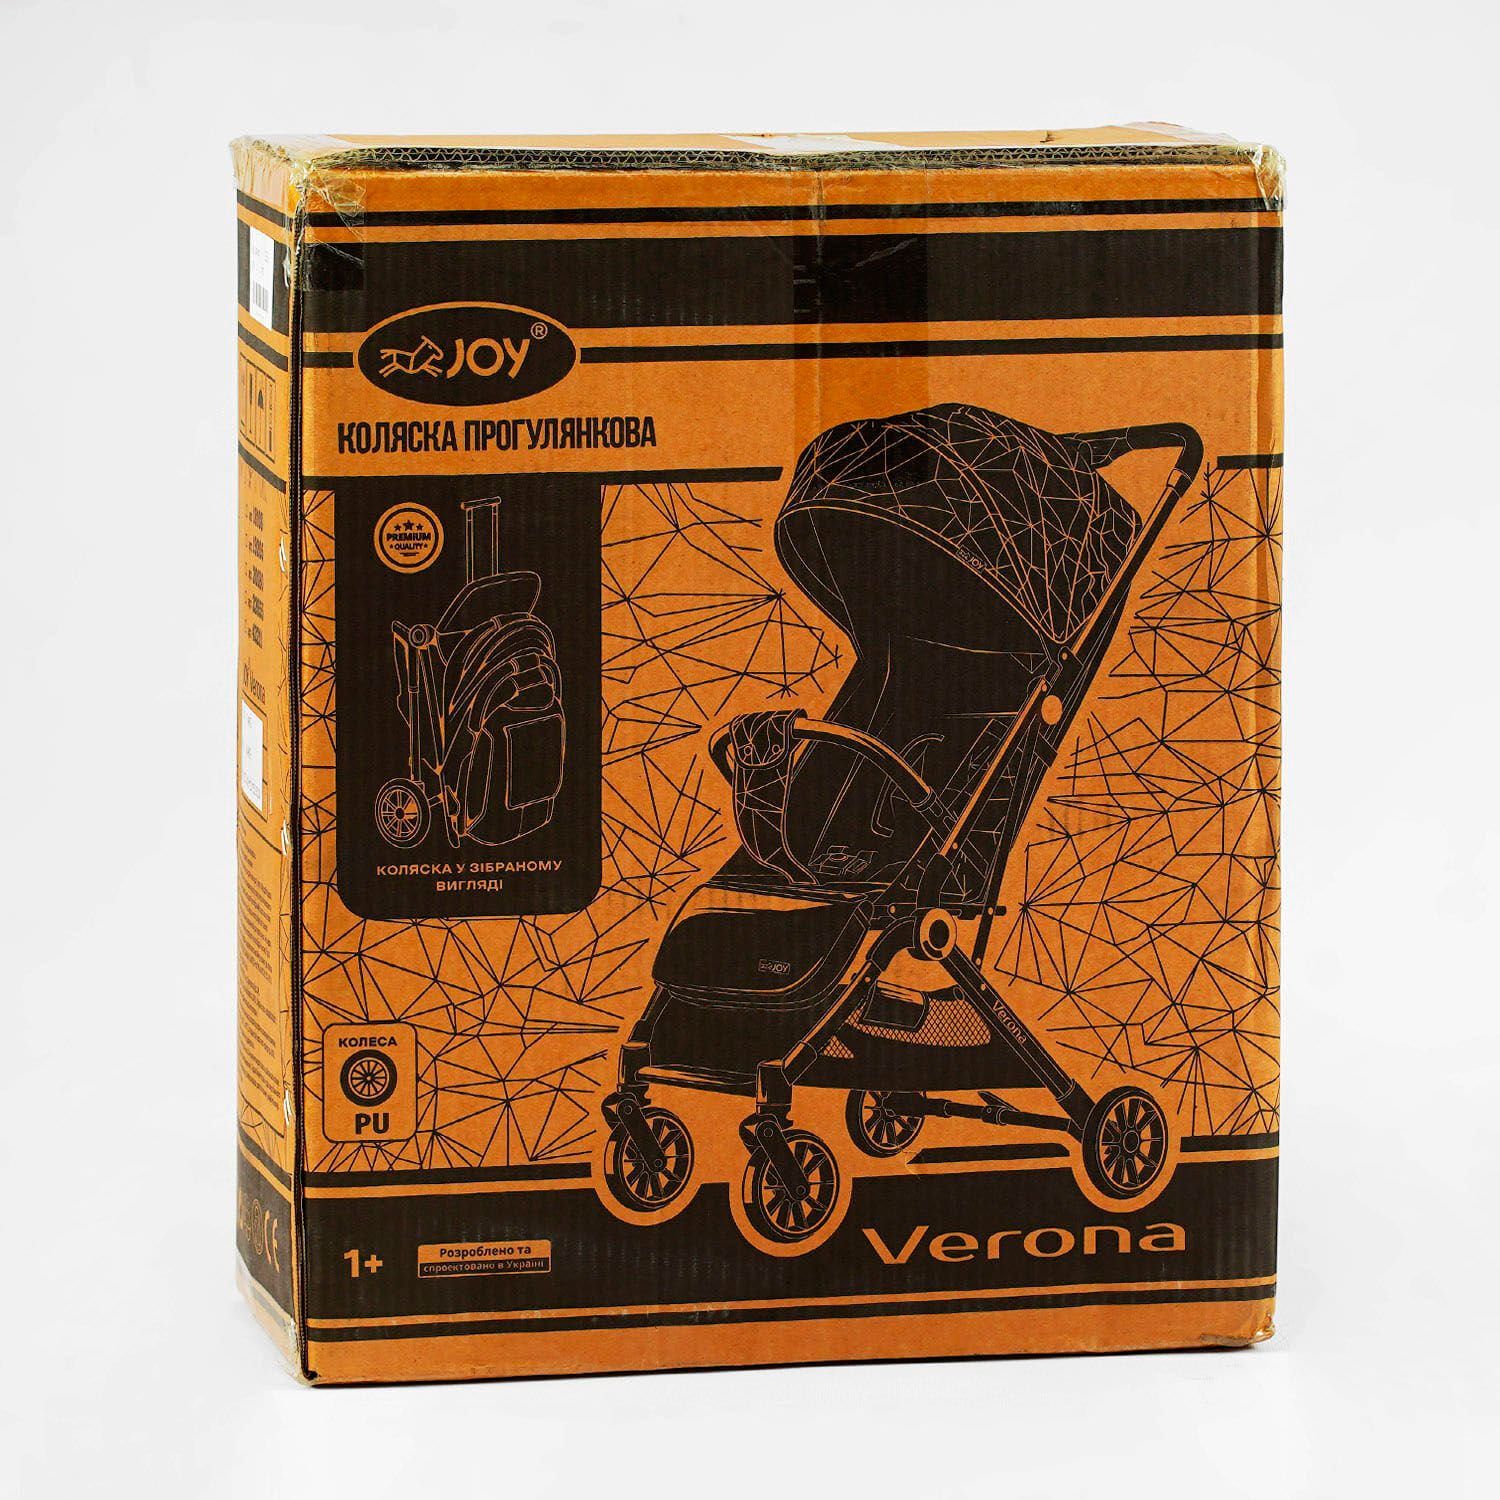 Коляска прогулочная детская "JOY" Verona 32655 (1) рама стальная, футкавер, подстаканник, телескопическая ручка